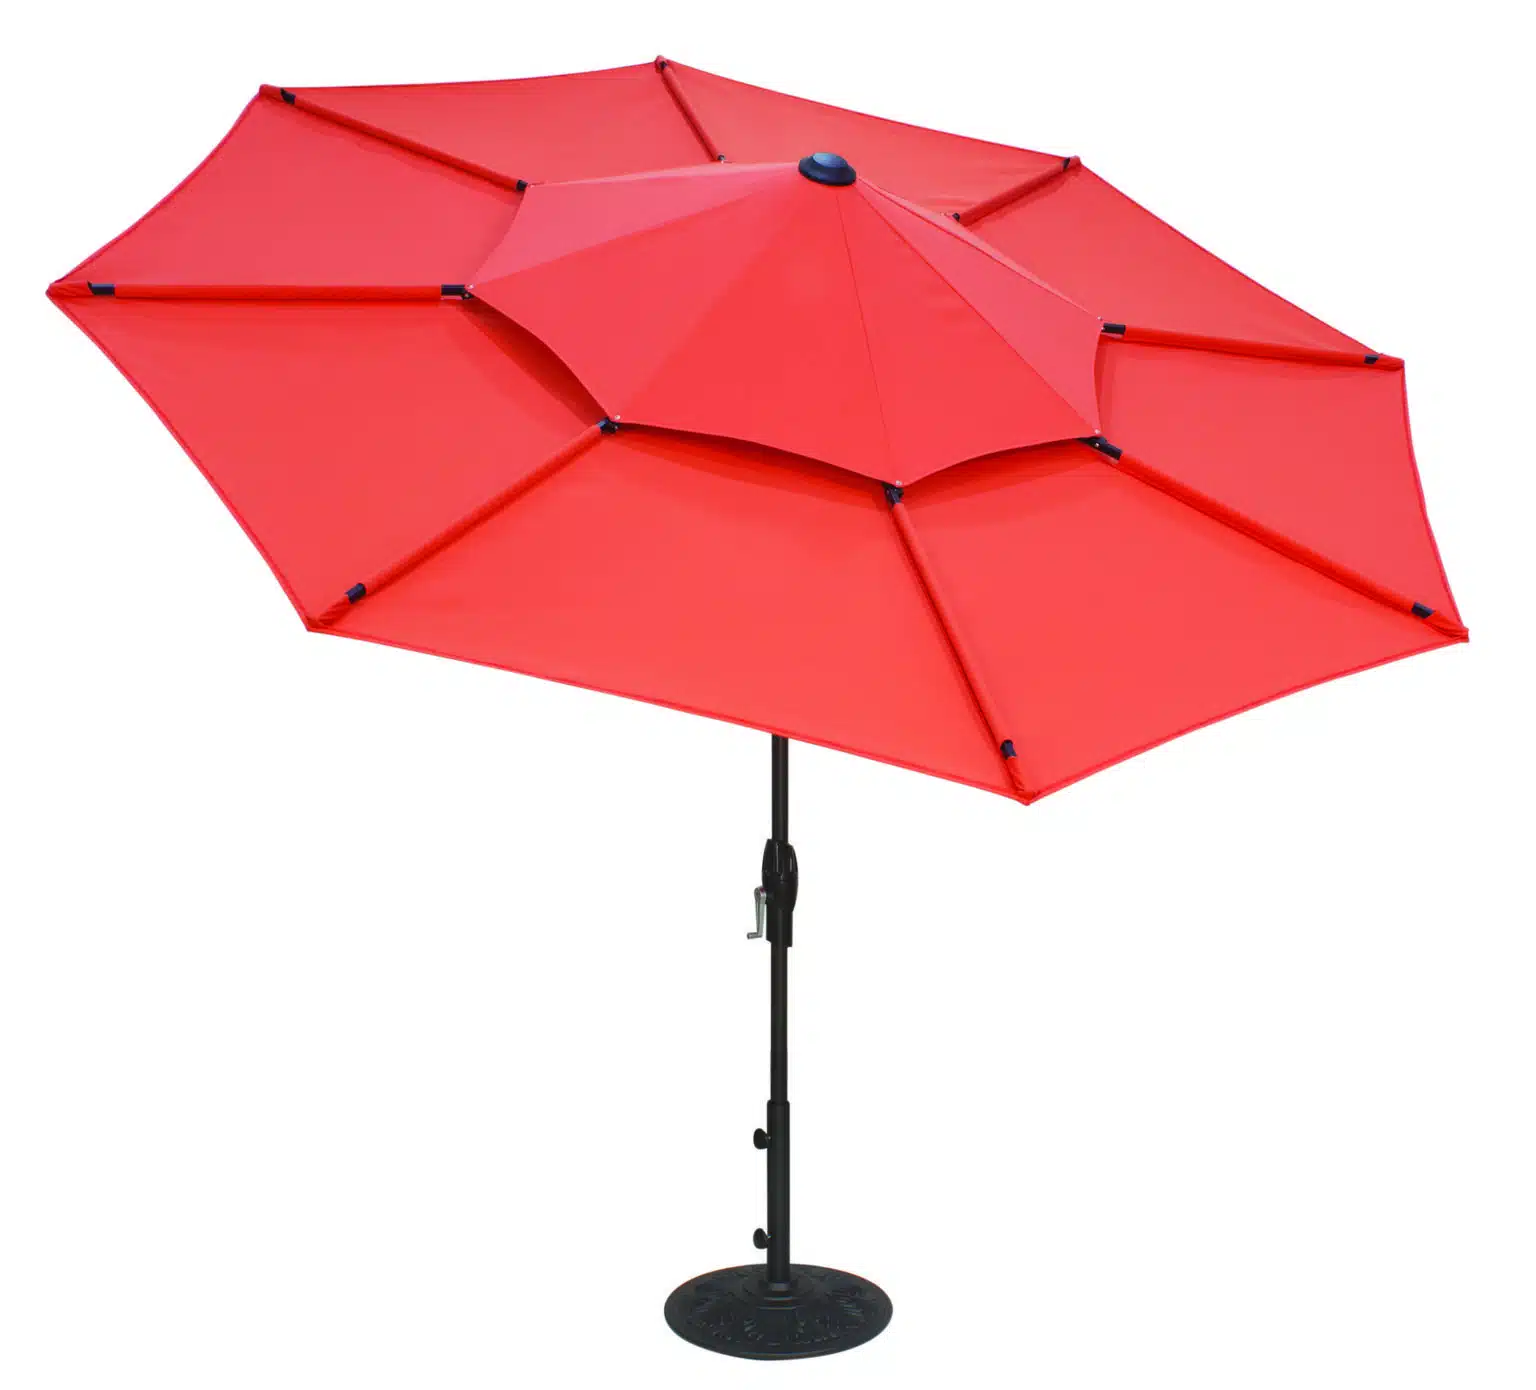 A Treasure Garden Umbrella is a Real Outdoor Treasure - Hauser's Patio